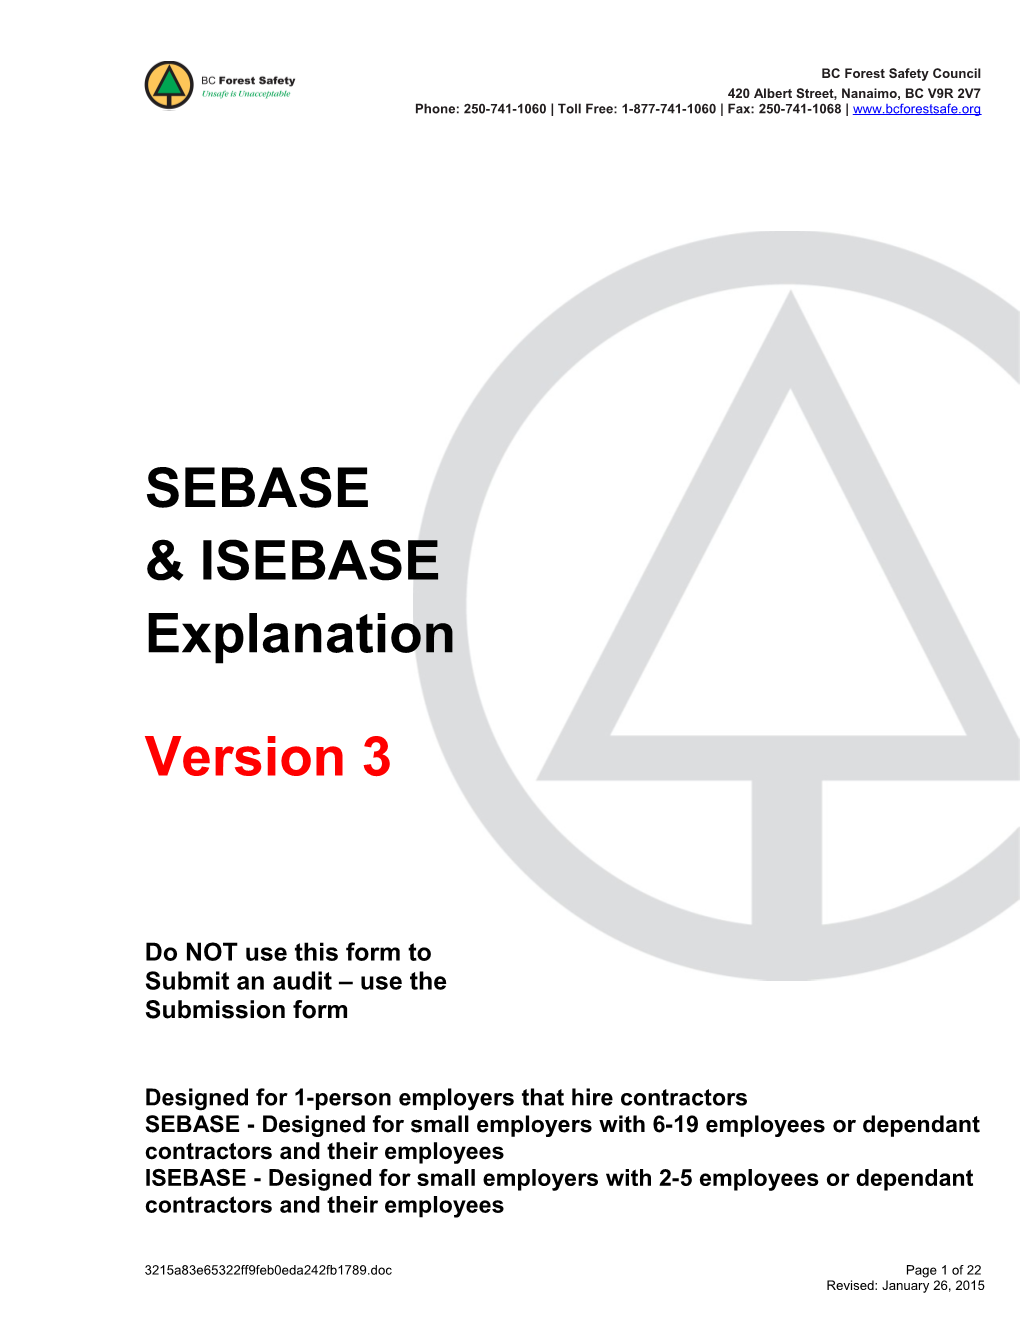 SEBASE and ISEBASE Audit Explanation